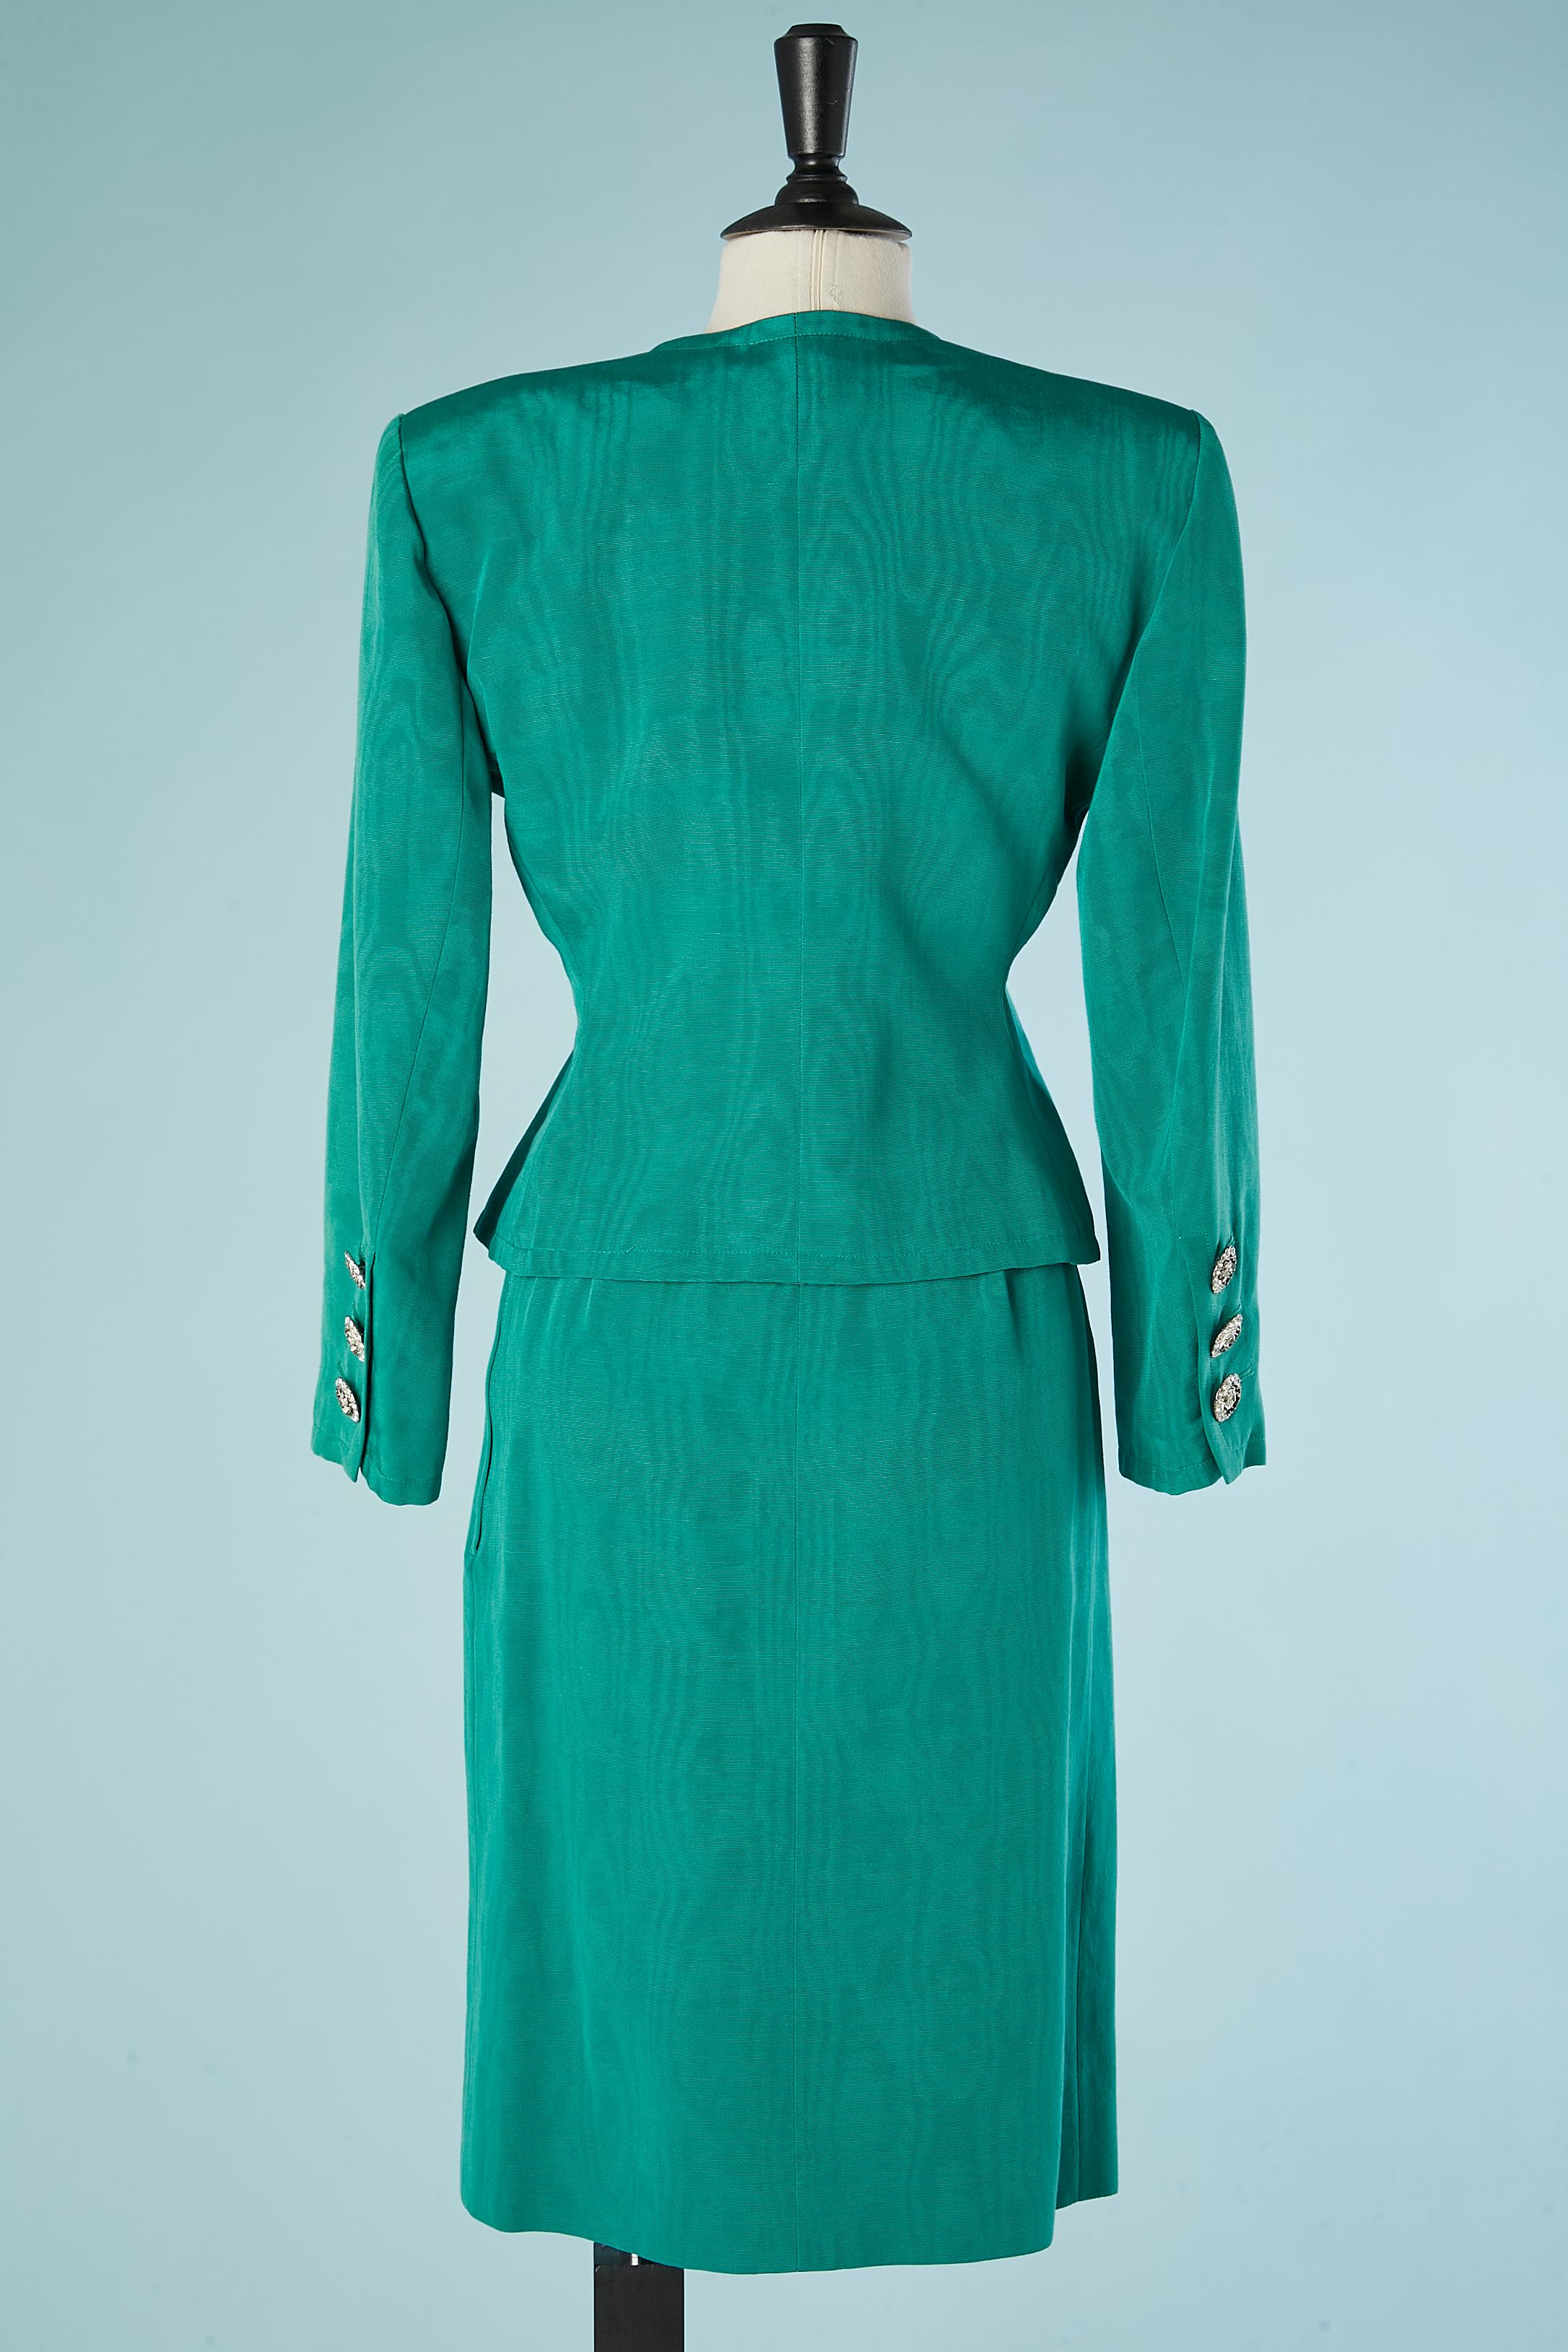 Green Ottoman evening skirt-suit  Saint Laurent Rive Gauche  For Sale 3